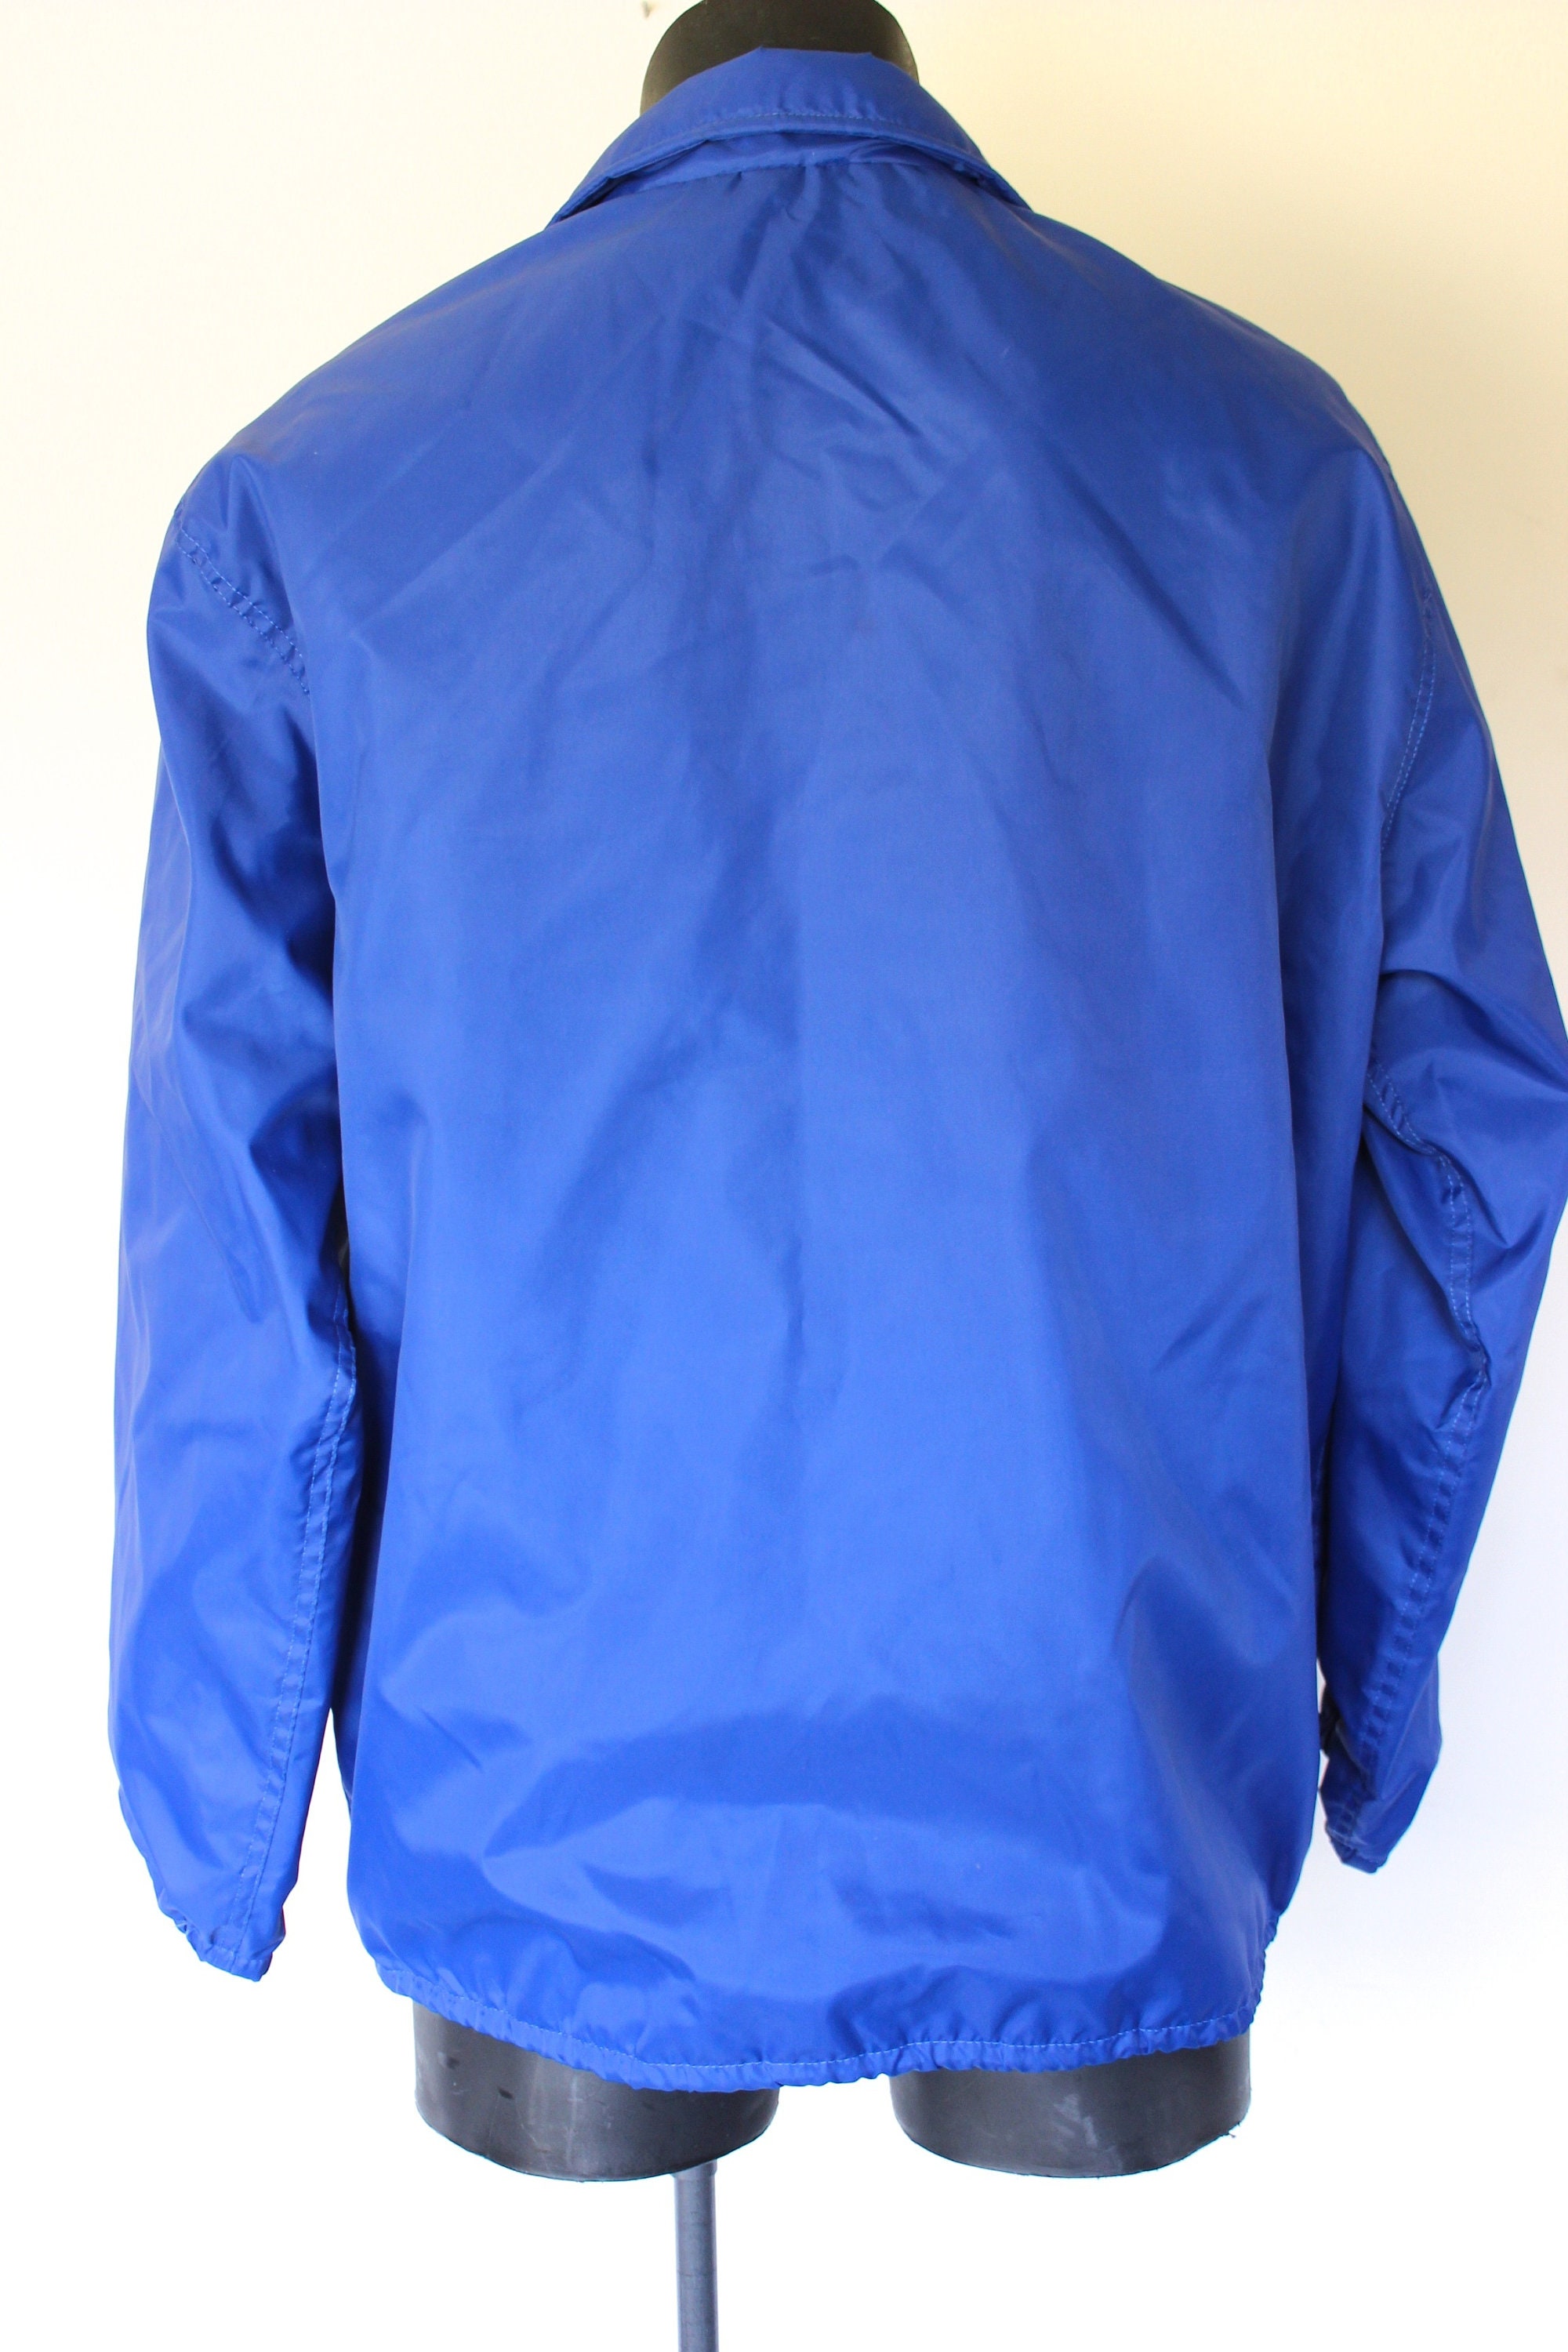 90s Dunbrooke Windbreaker Domed Jacket Sports Jacket - Etsy